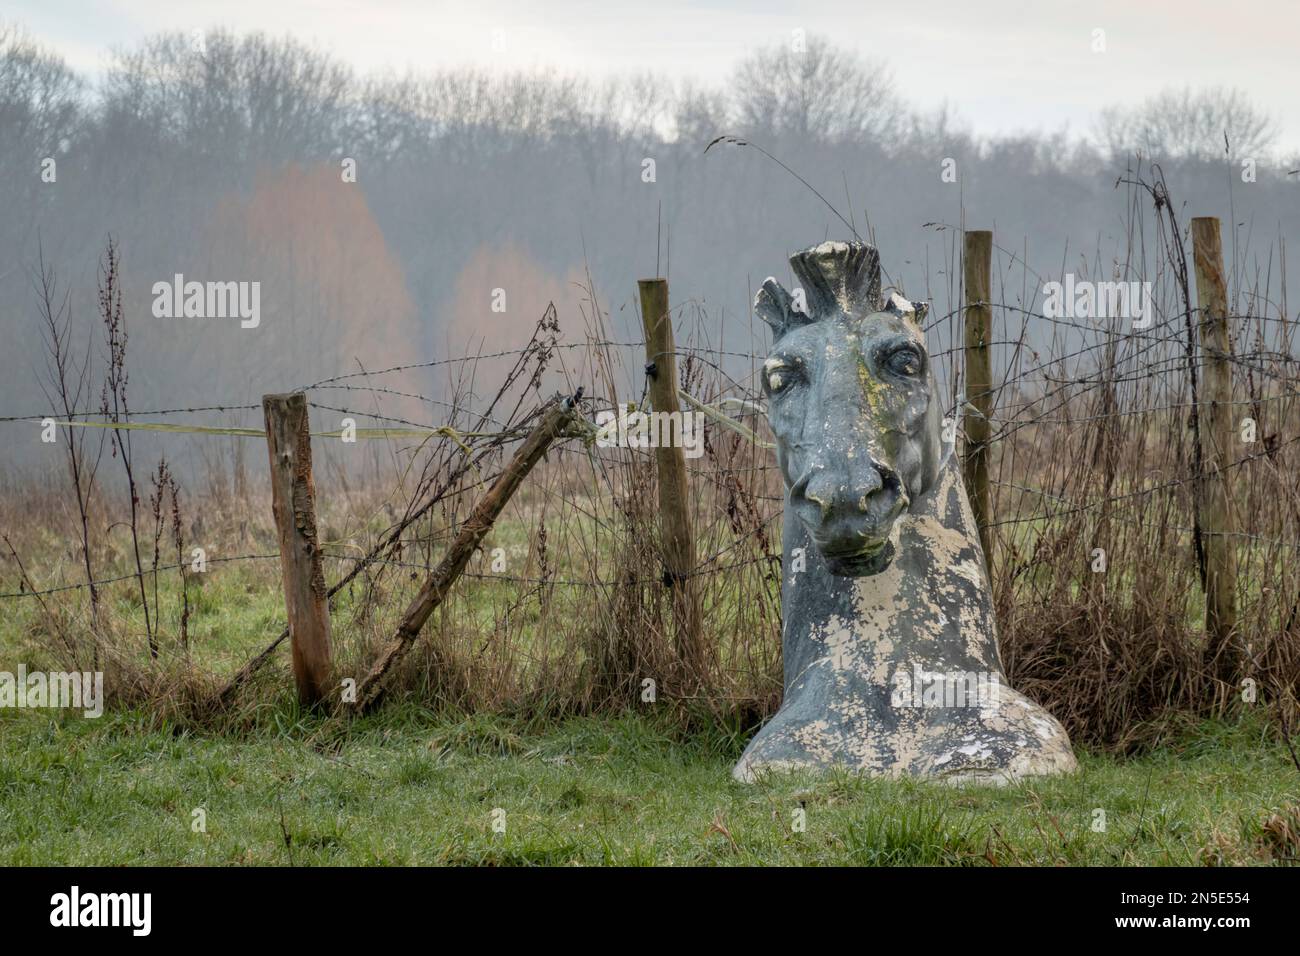 Modèle de peeling de la tête de cheval contre la clôture barbelée, Bucklebury Common, Berkshire, Angleterre, Royaume-Uni, Europe Banque D'Images